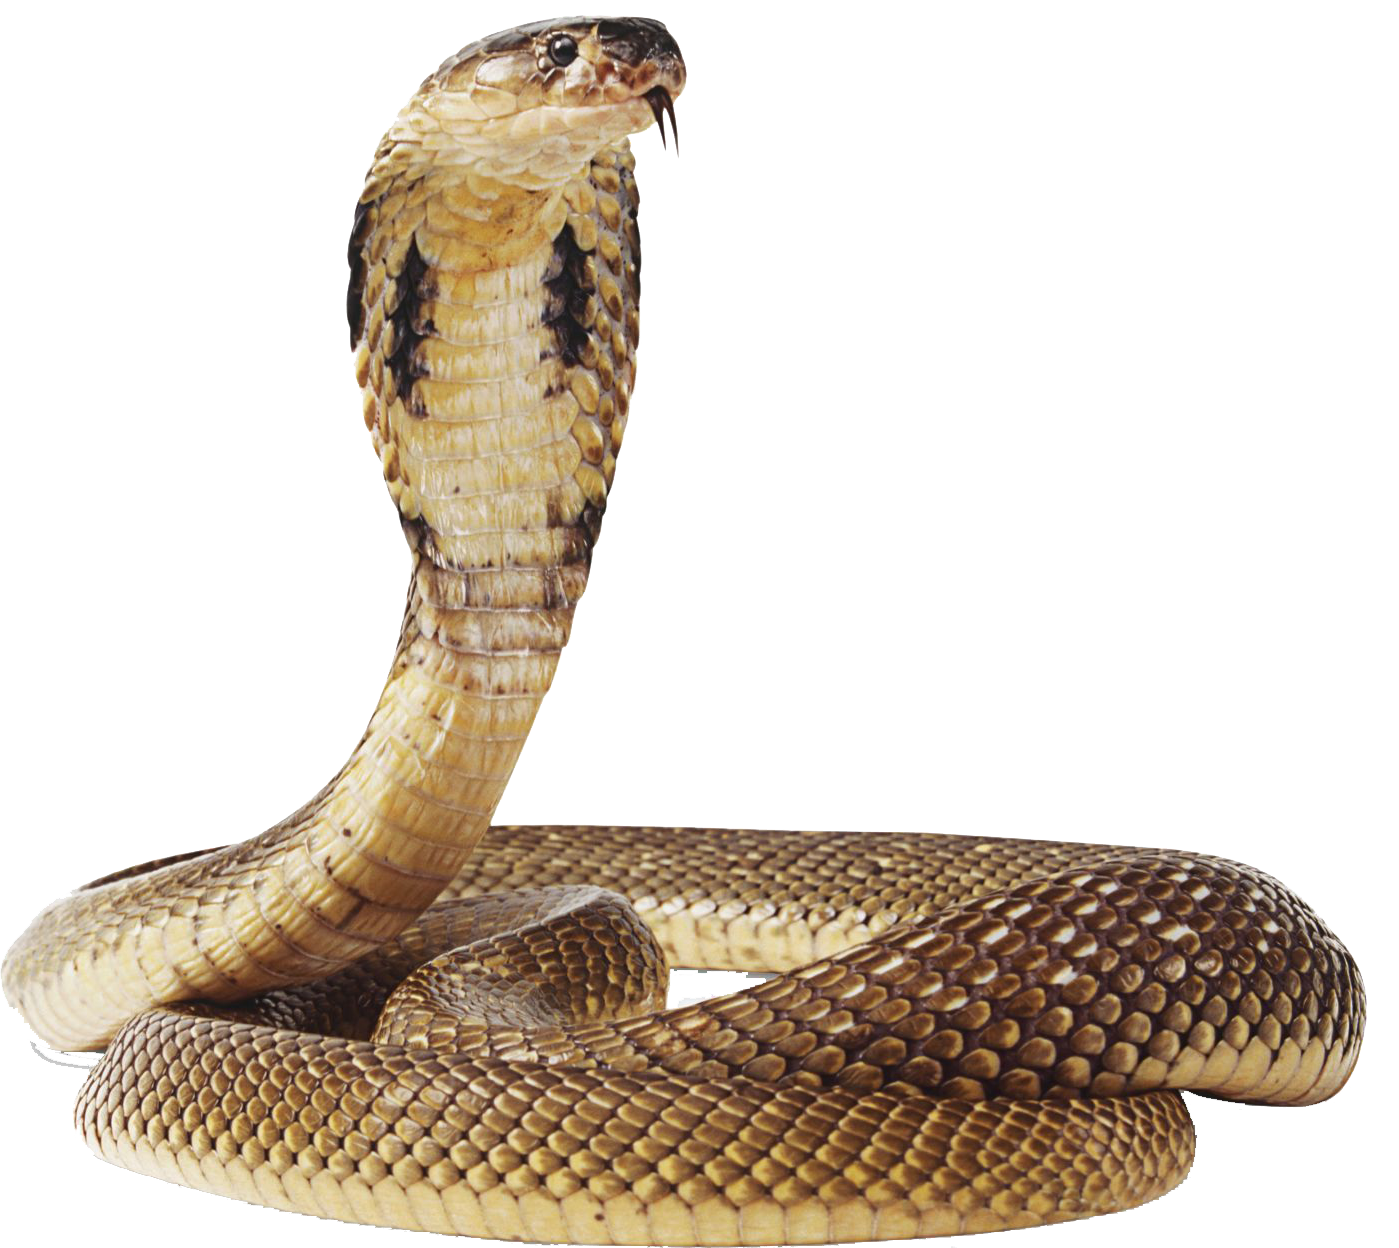 Cobra Snake Png Transparent Image - Snake, Transparent background PNG HD thumbnail